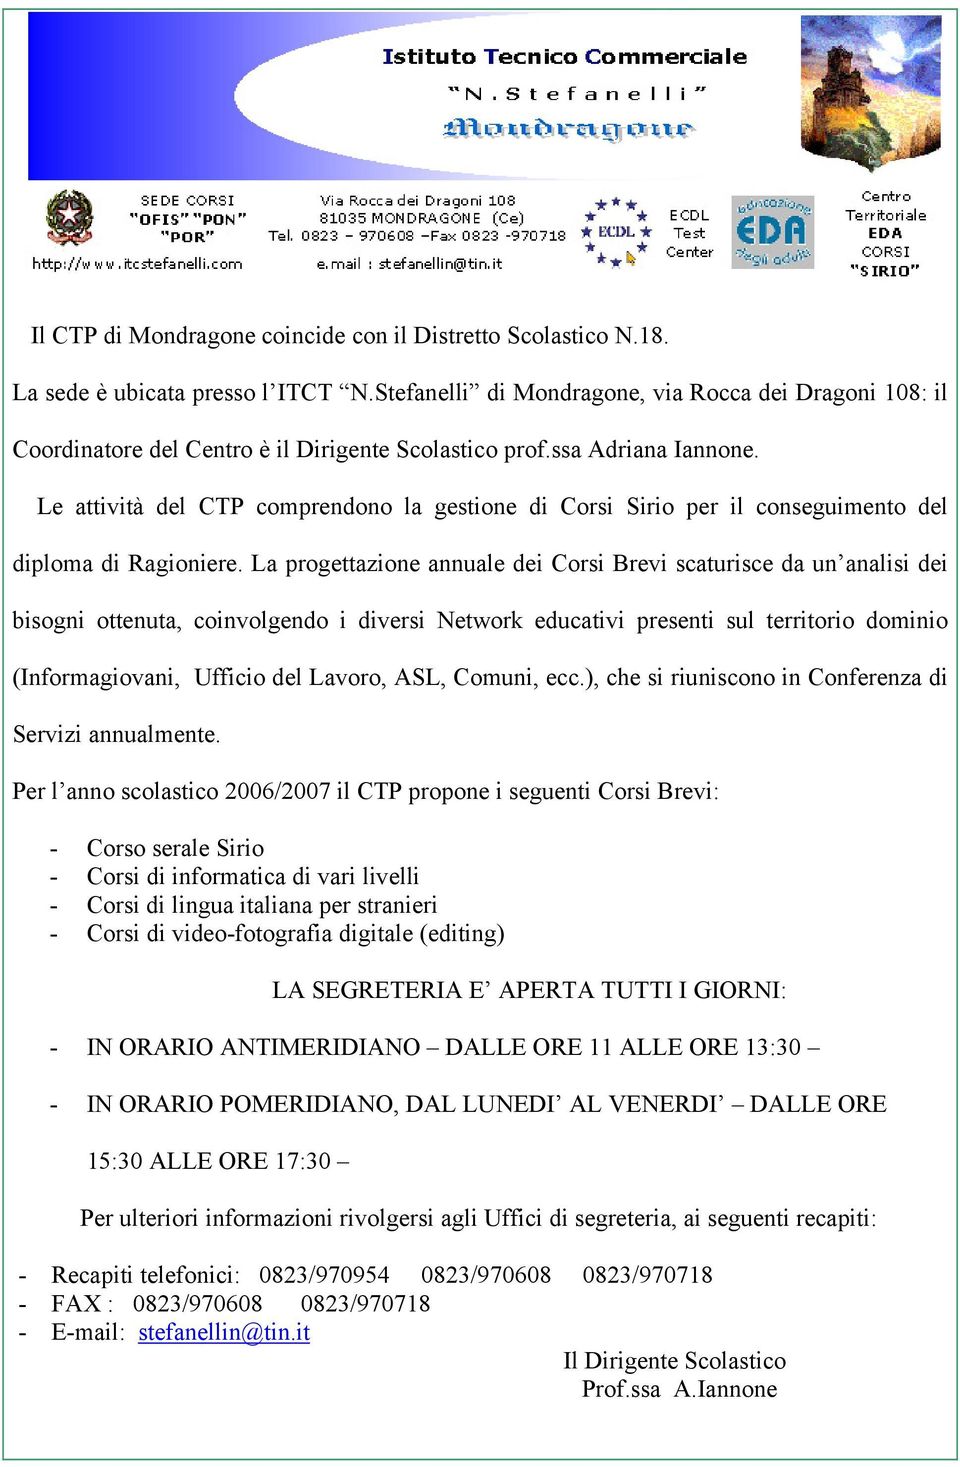 Le attività del CTP comprendono la gestione di Corsi Sirio per il conseguimento del diploma di Ragioniere.